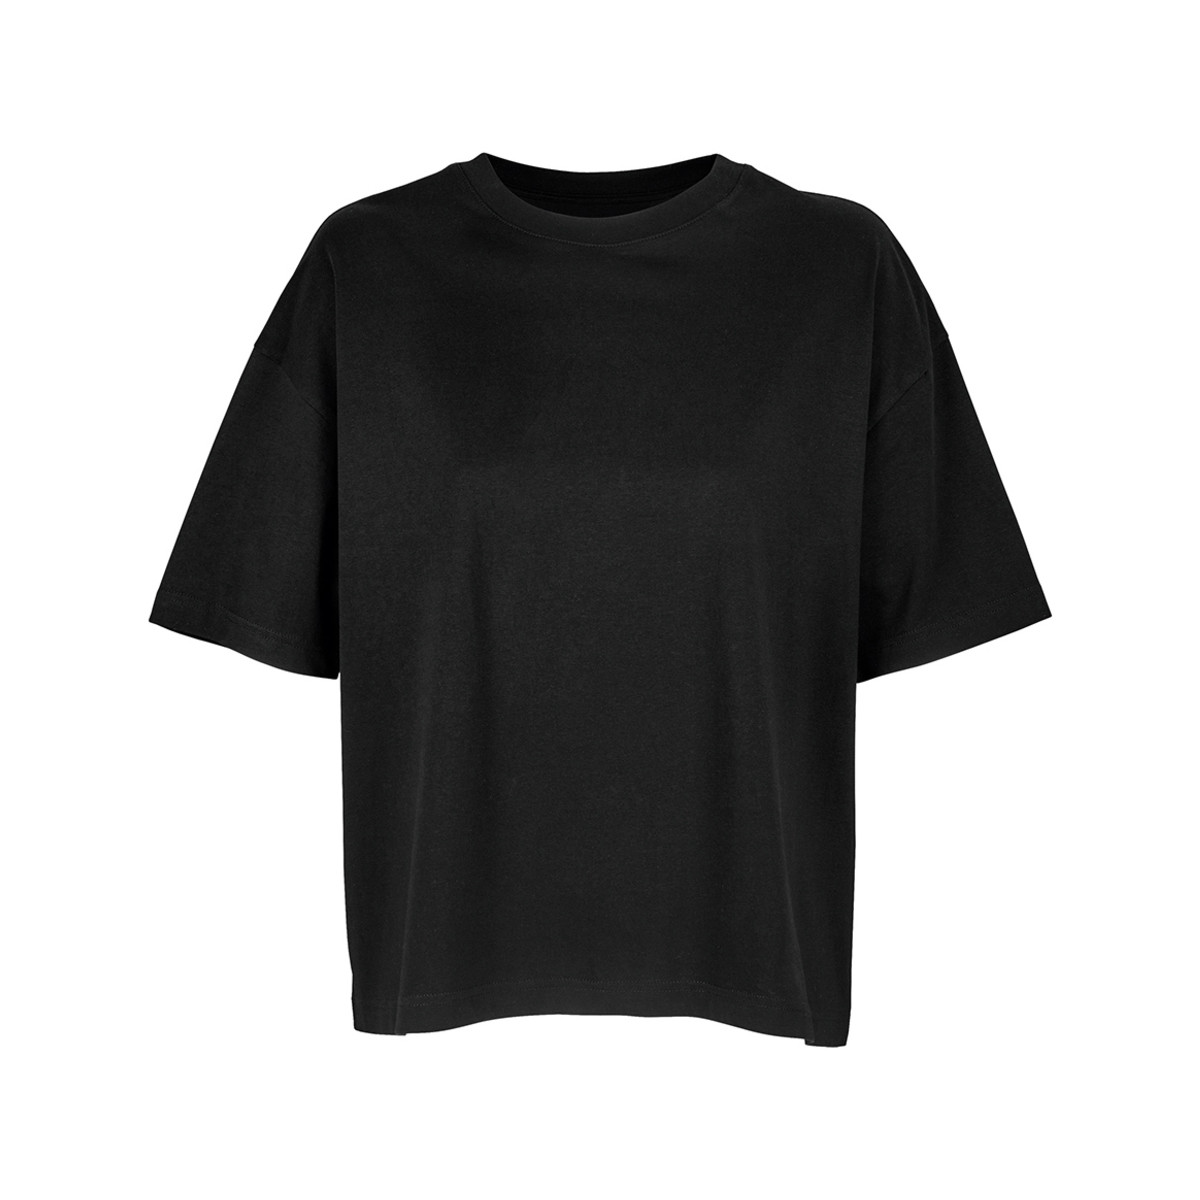 Vêtements Femme tee shirt sans manchematière sweet shirt 3807 Noir